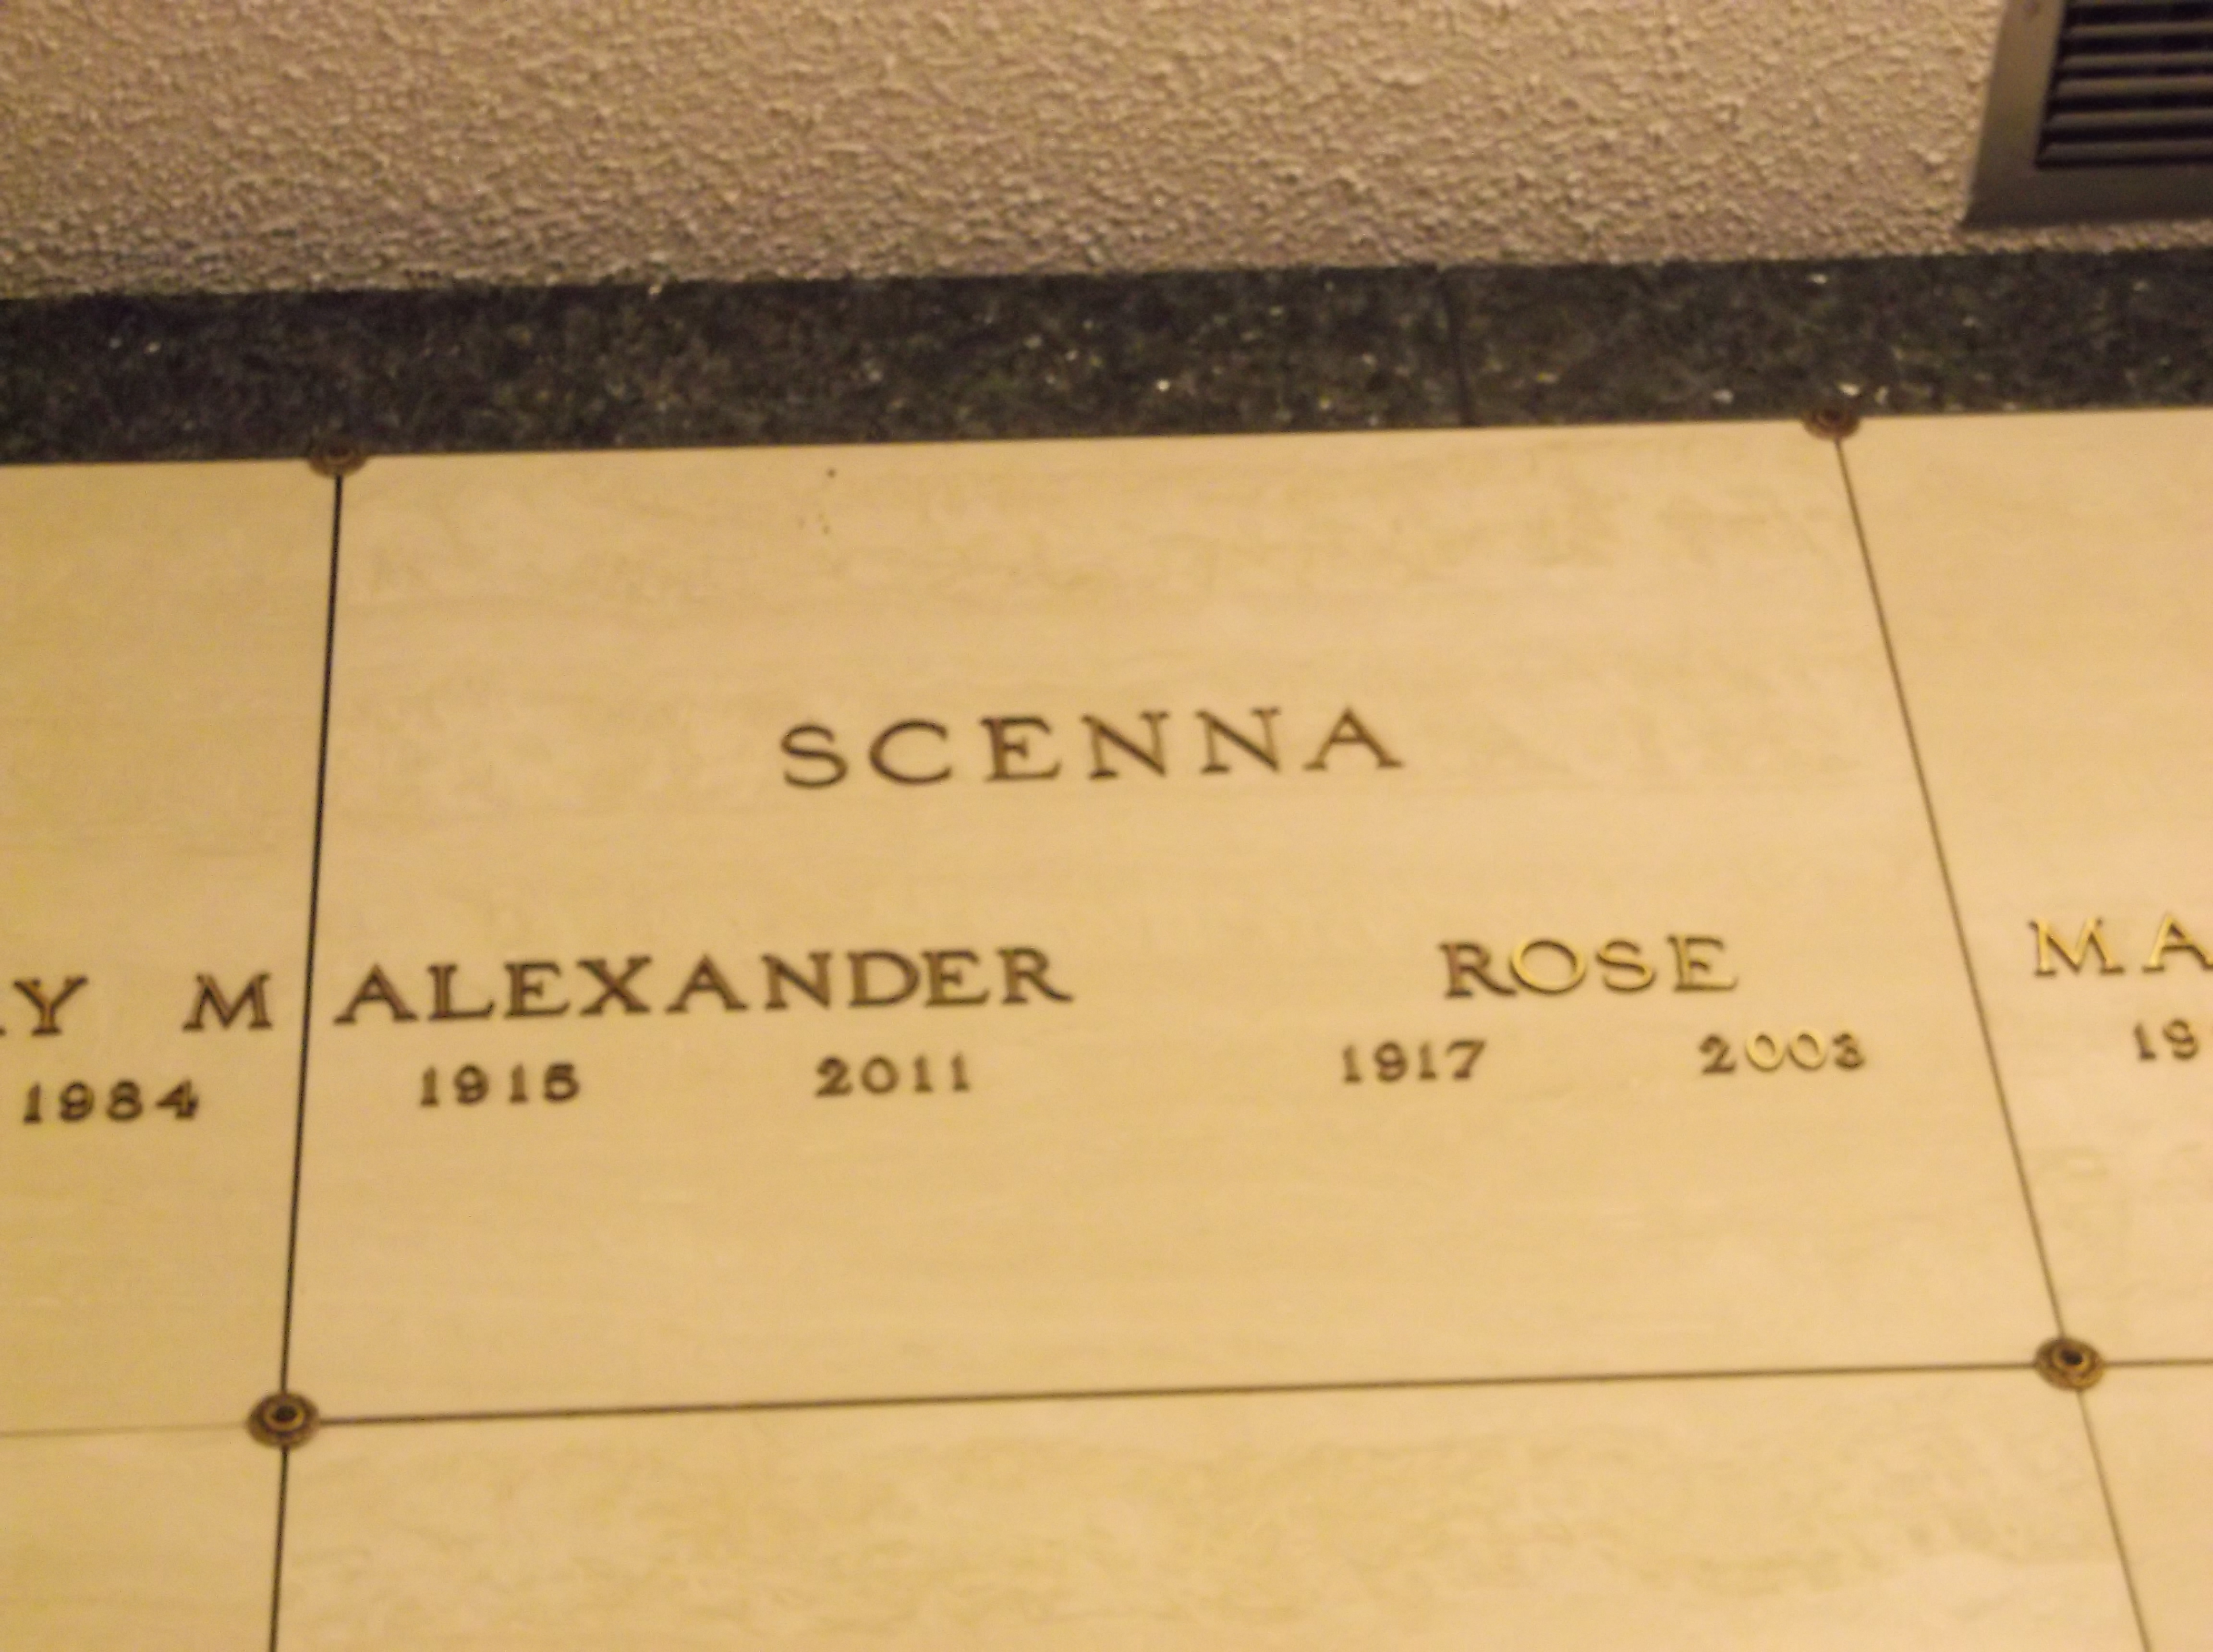 Alexander Scenna